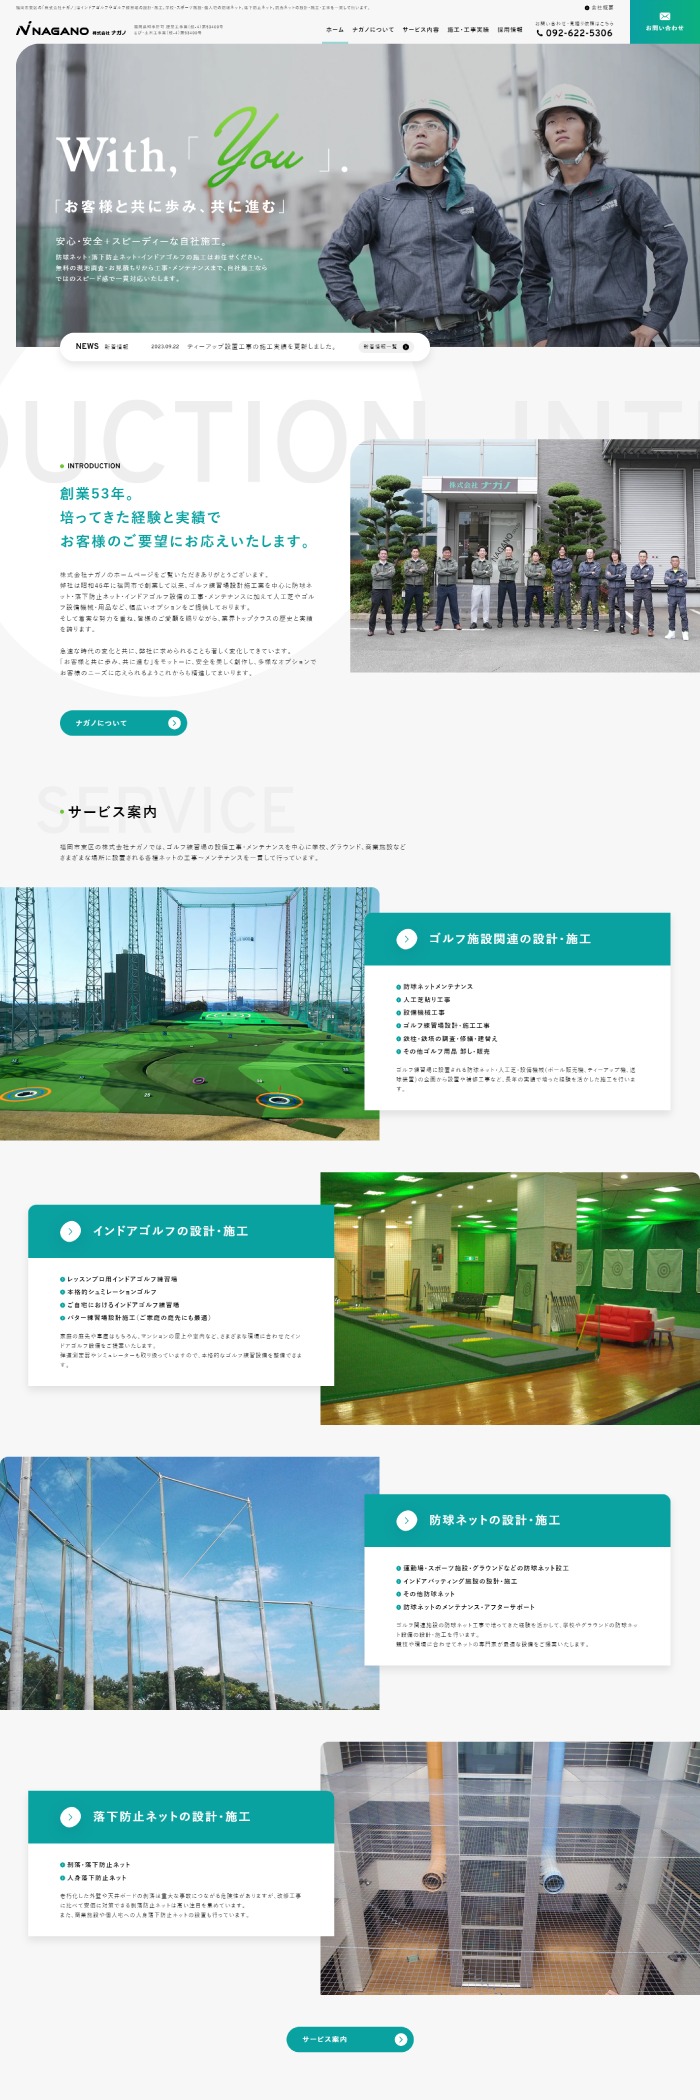 株式会社ナガノ様 ホームページ制作実績 デスクトップイメージ